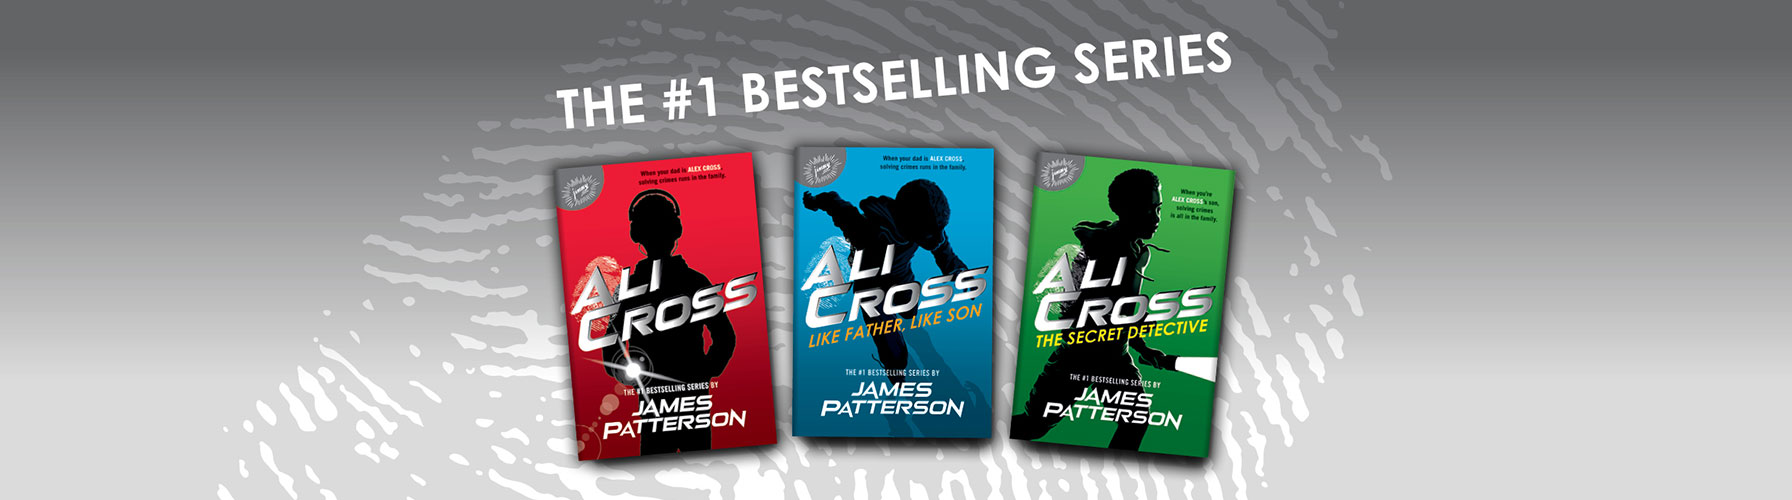 The number 1 bestselling series Ali Cross